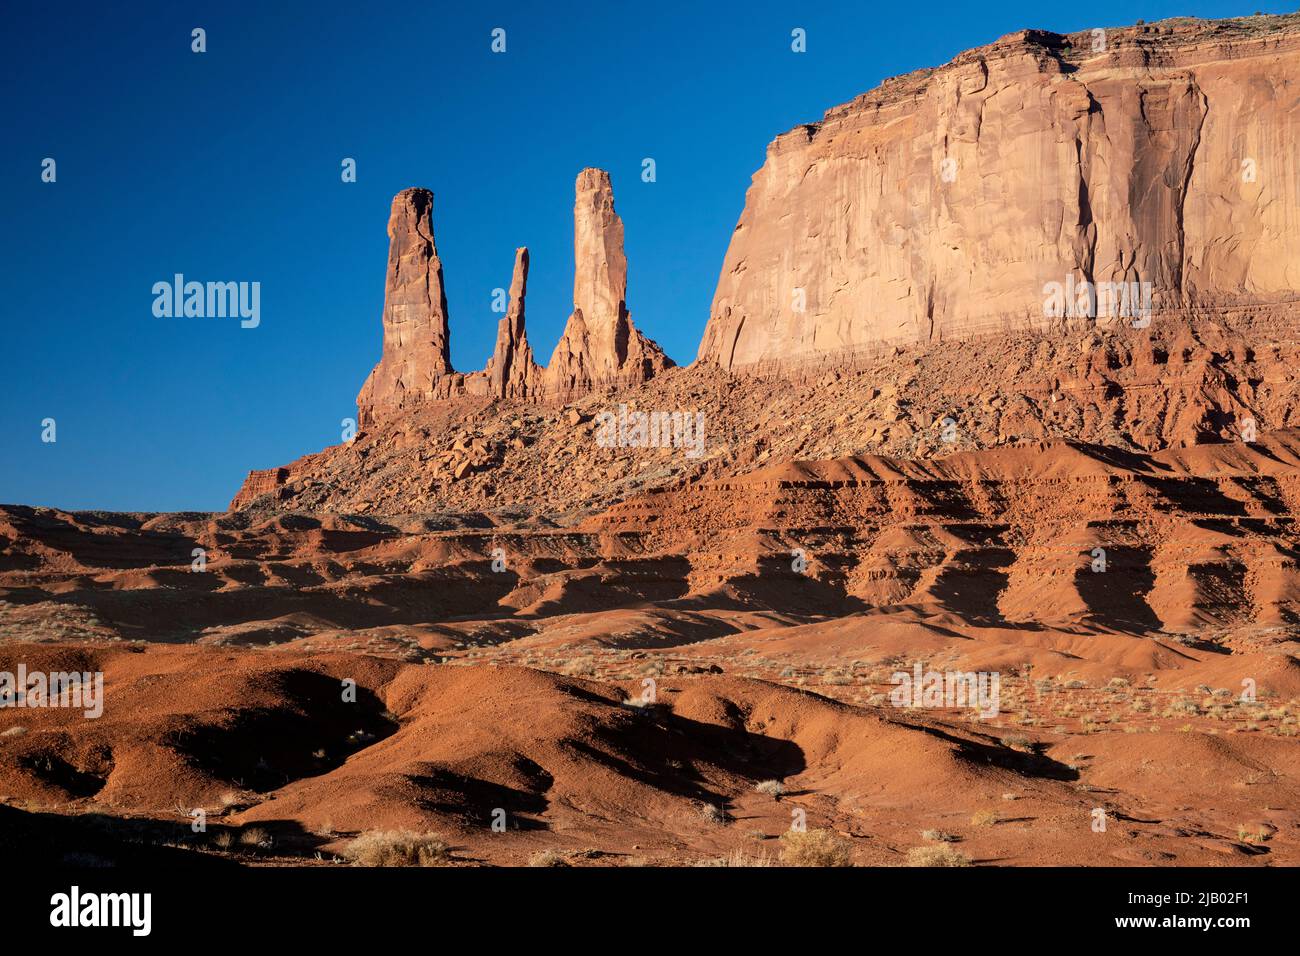 AZ00423-00....ARIZONA - Sandsteinbutten, die die drei Schwestern am John Ford's Point im Monument Valley Navajo Tribal Park genannt werden. Stockfoto